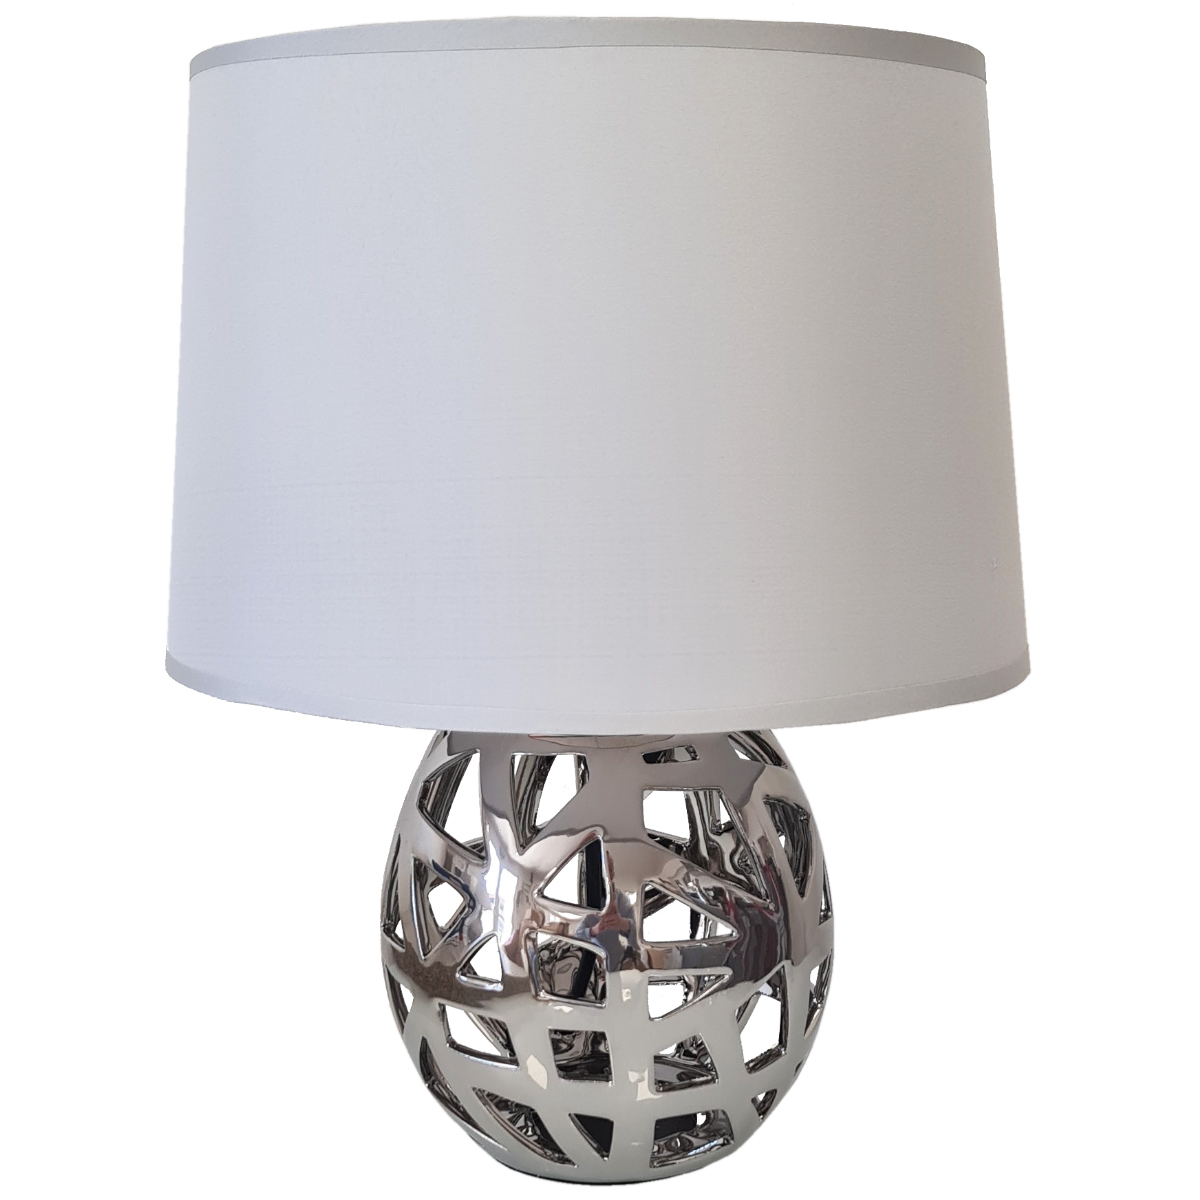 Lampe de table en Cramique - Argent - 36 cm